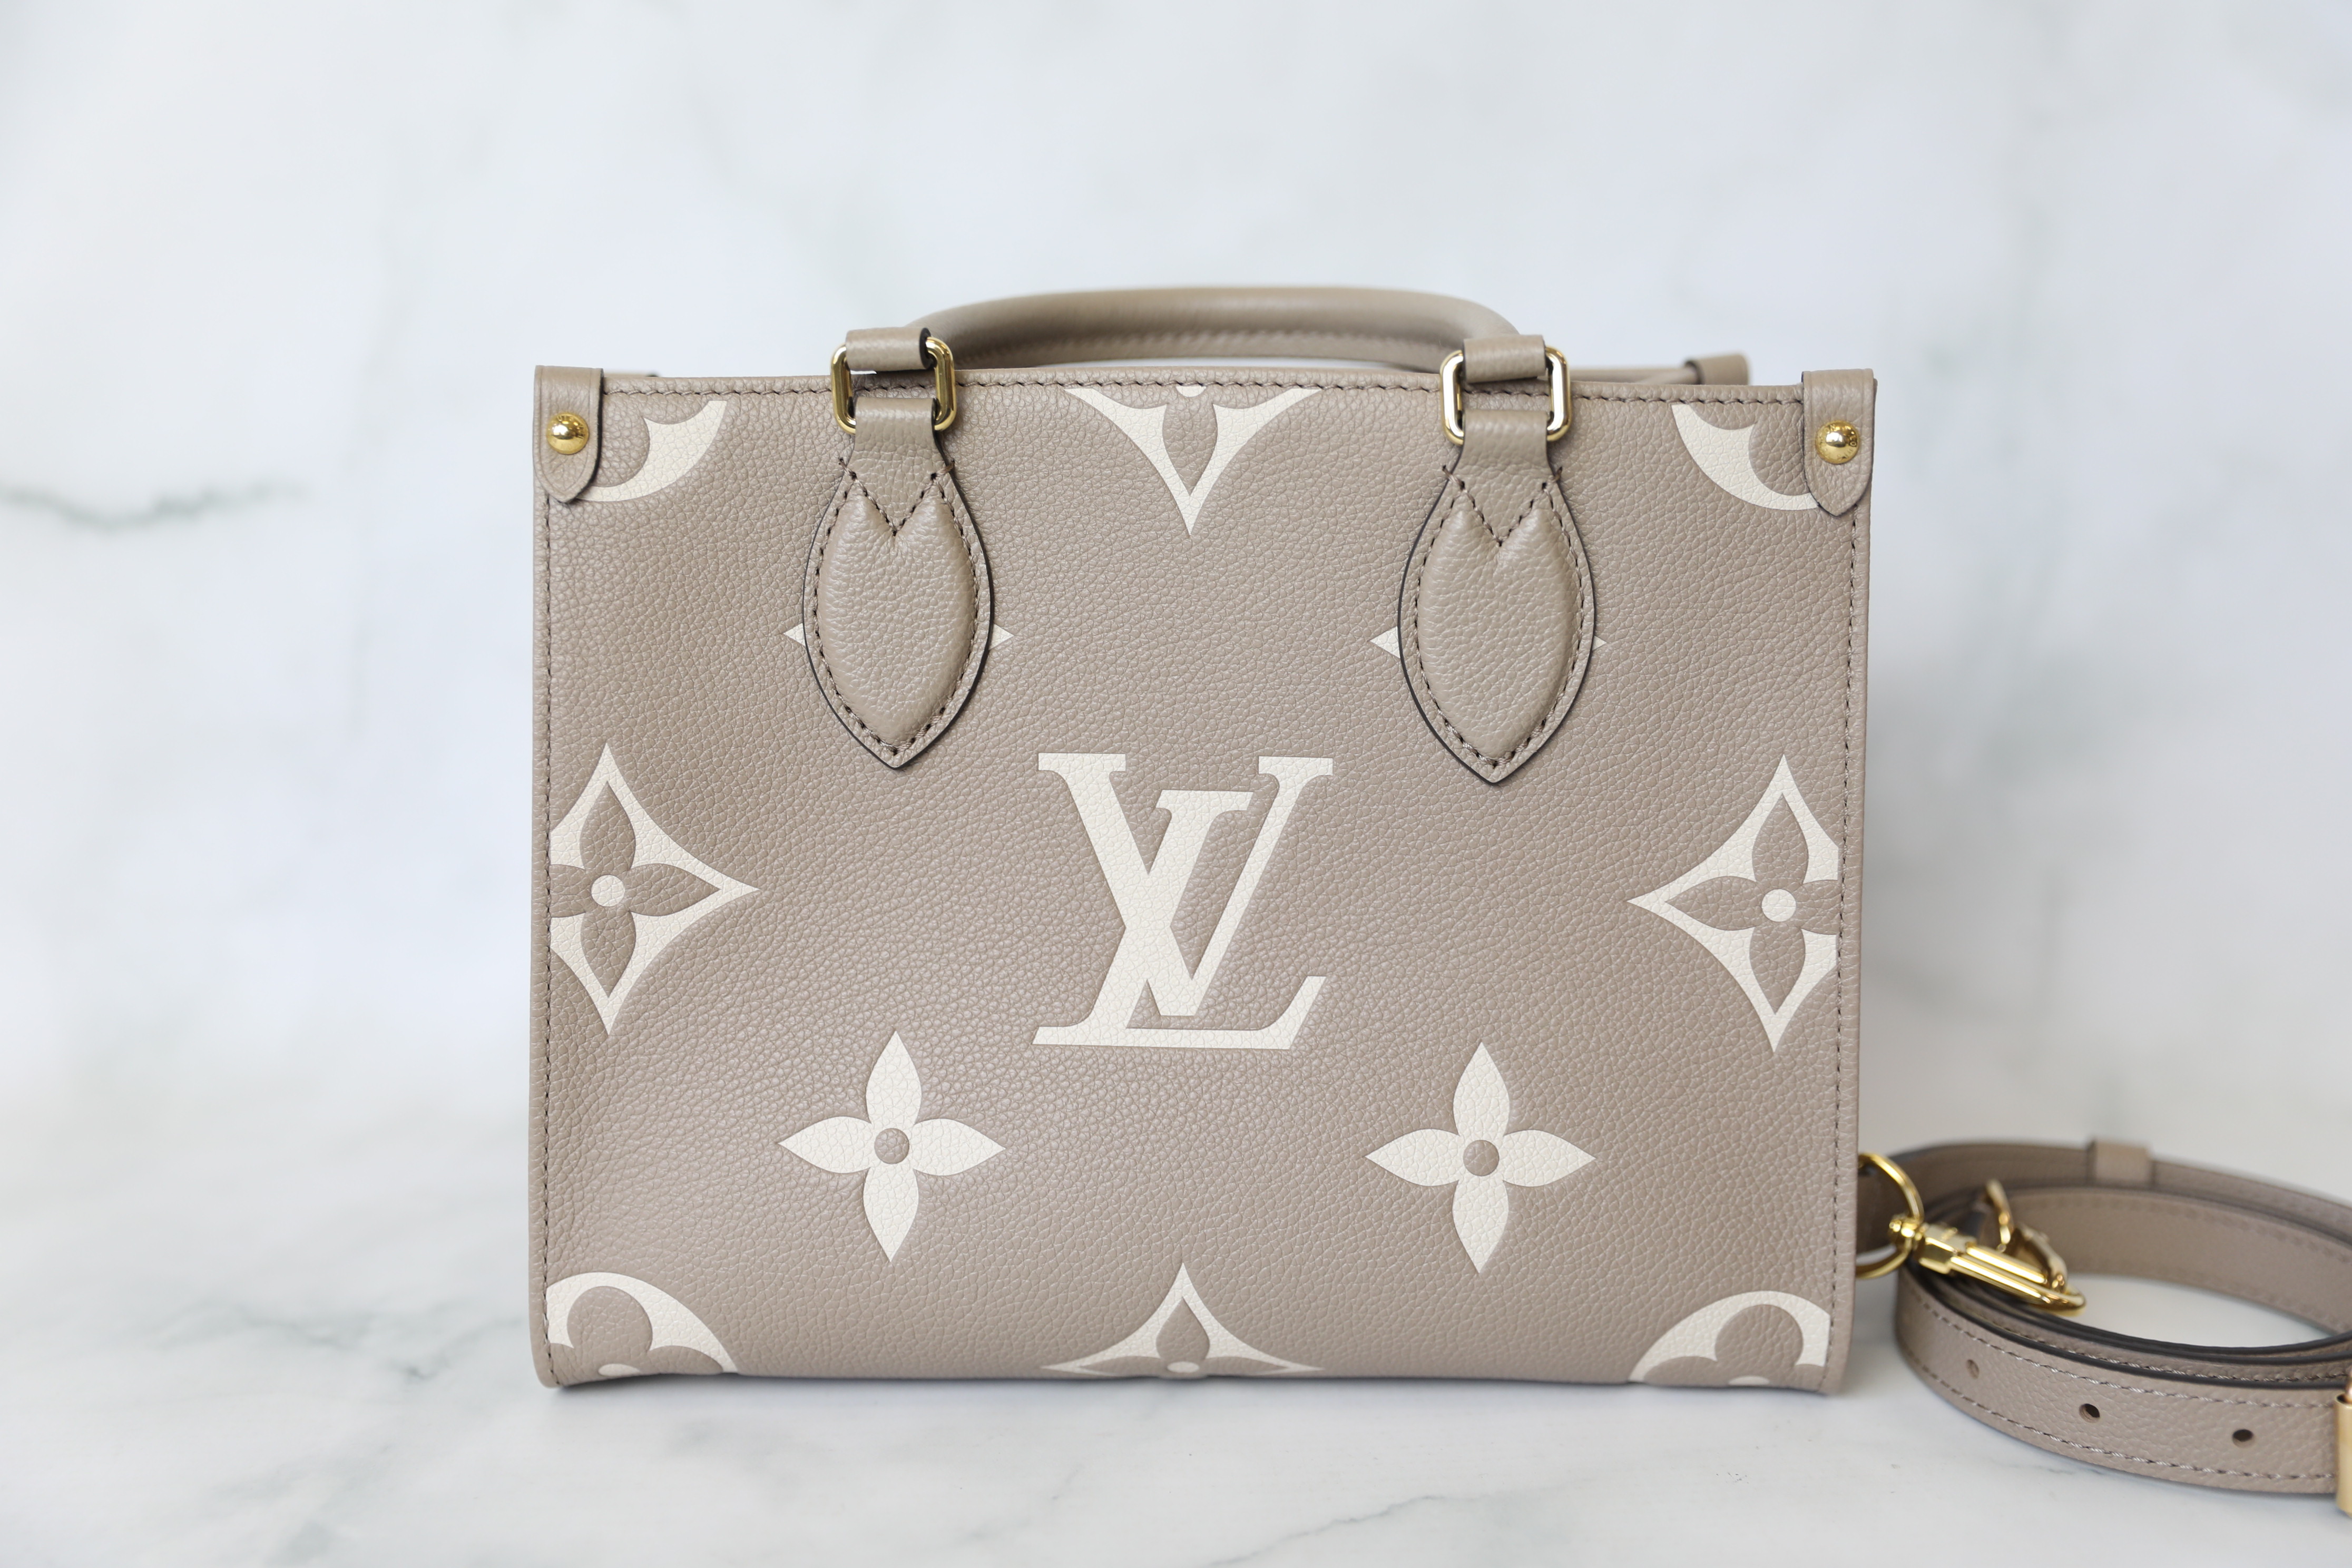 Louis Vuitton Noé Handbag 381105